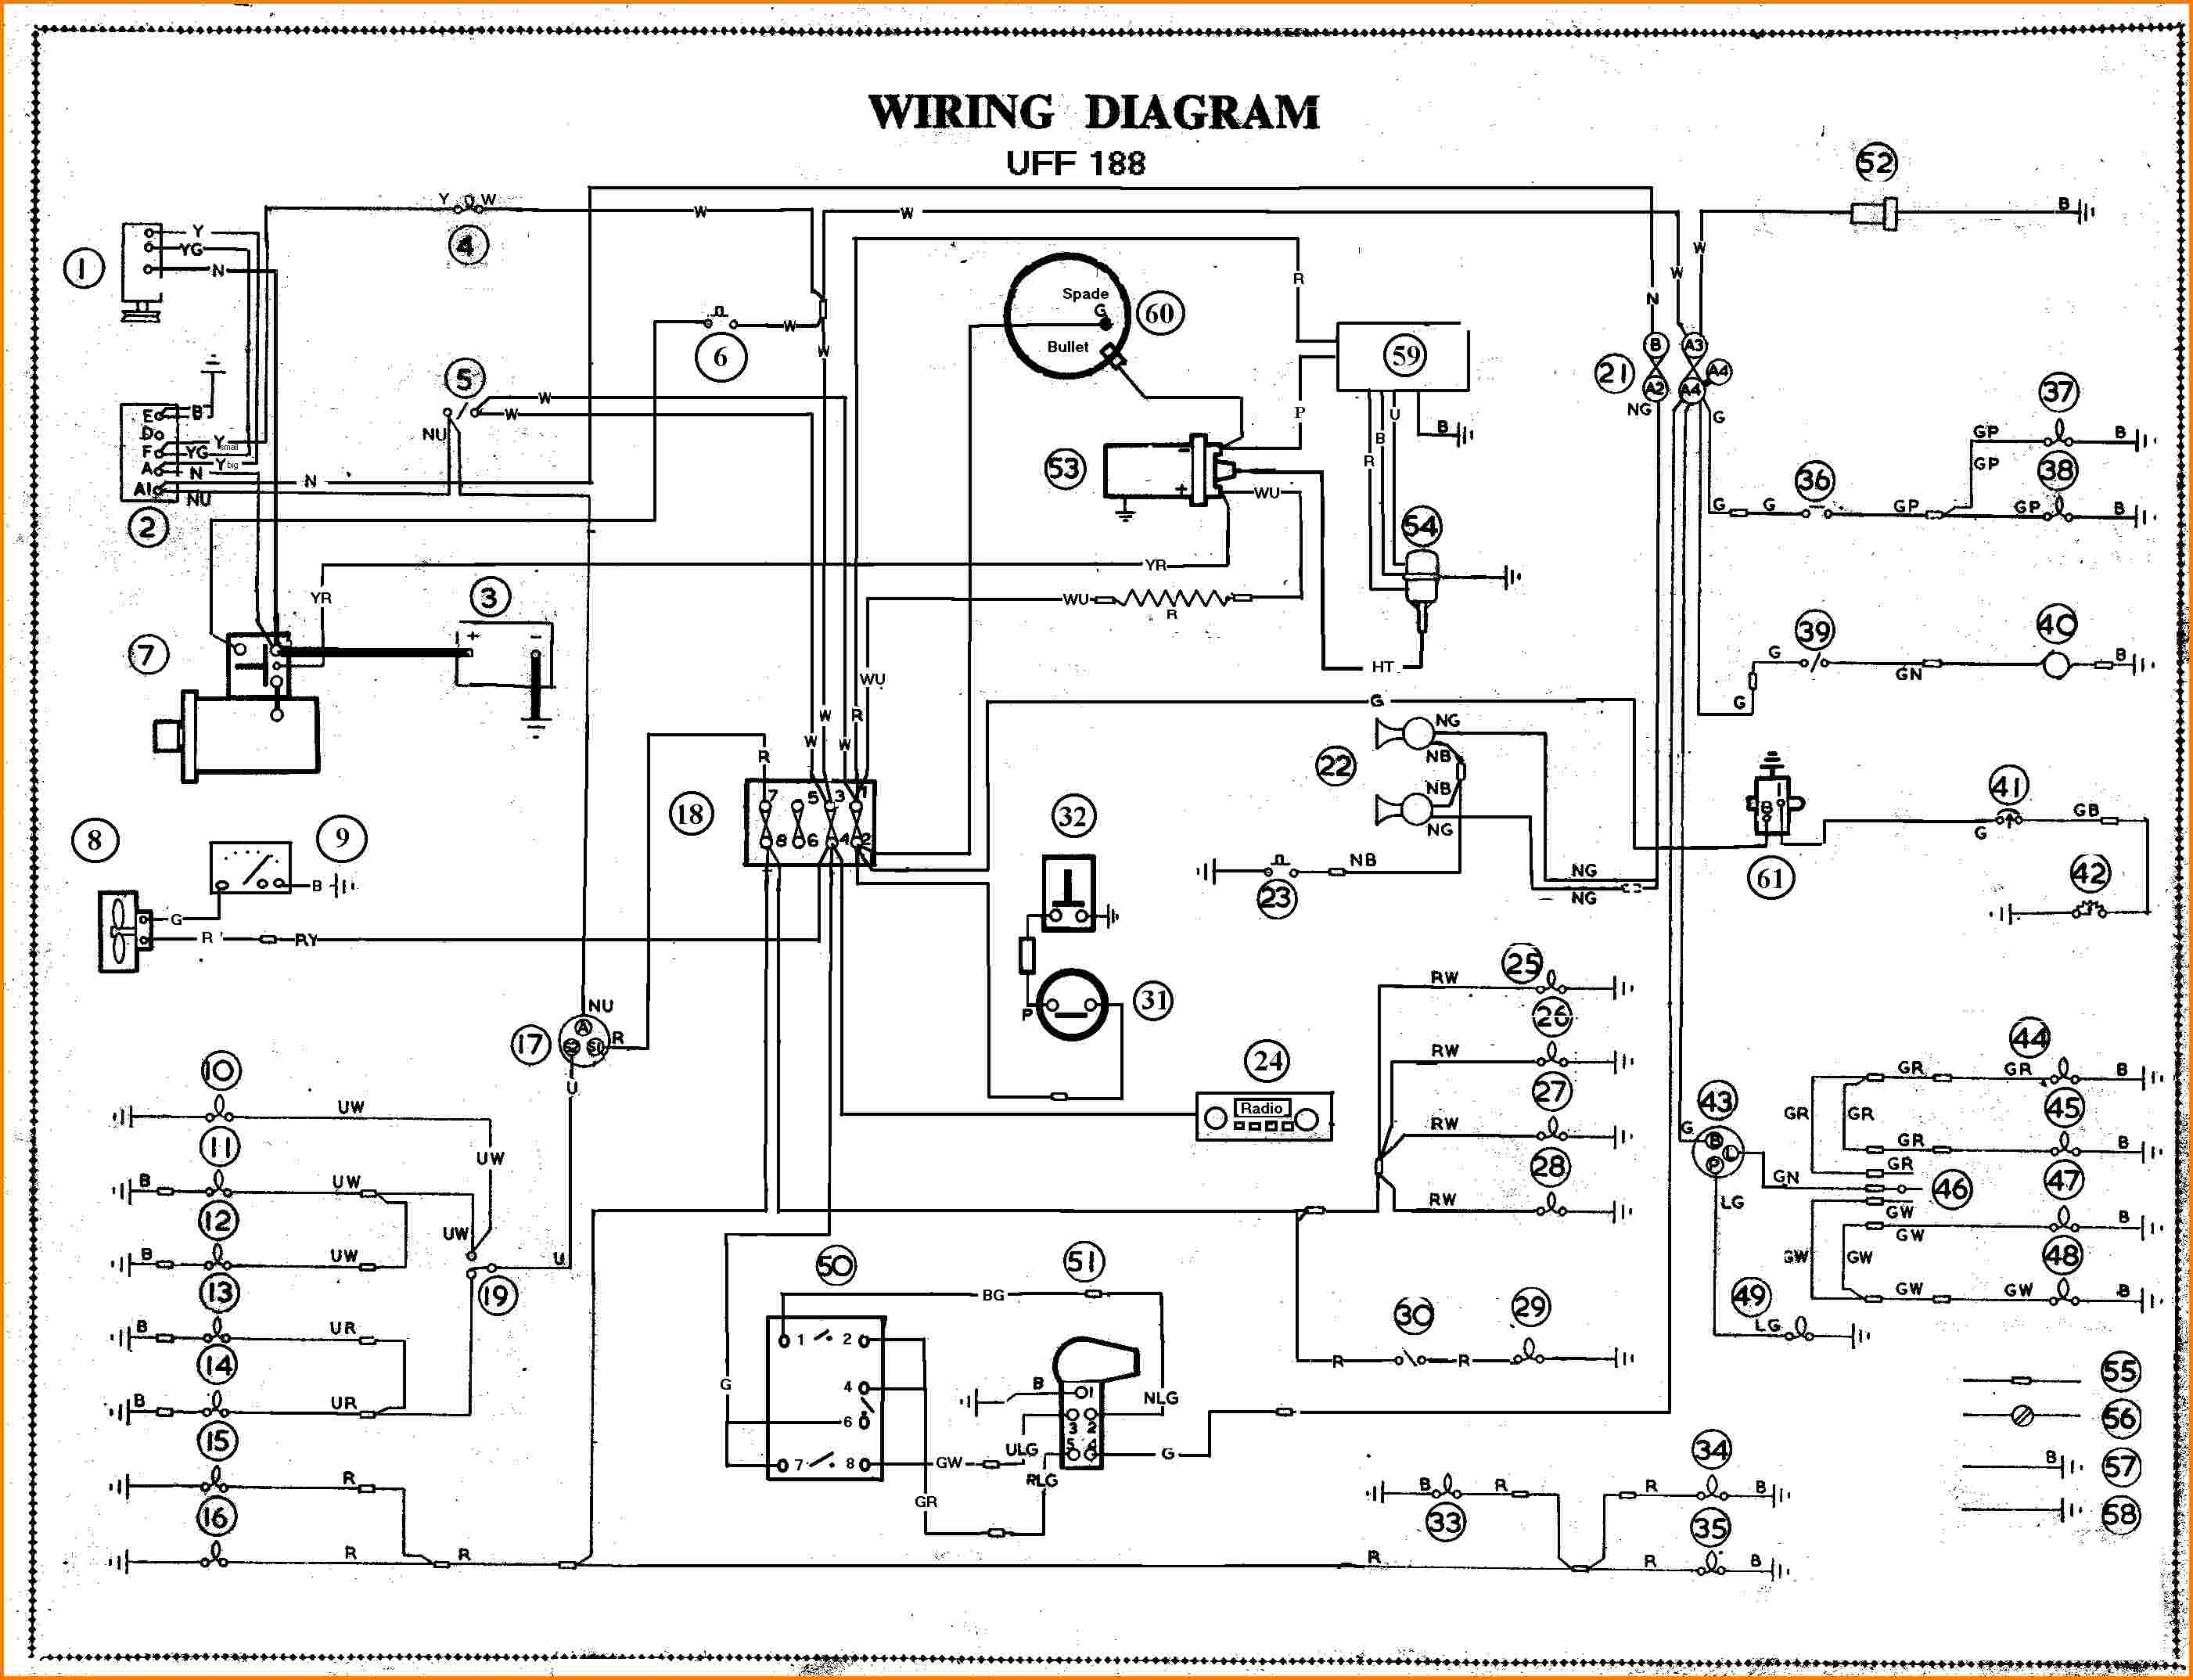 Wire Diagrams | Wiring Diagram - Automotive Wiring Diagram Symbols